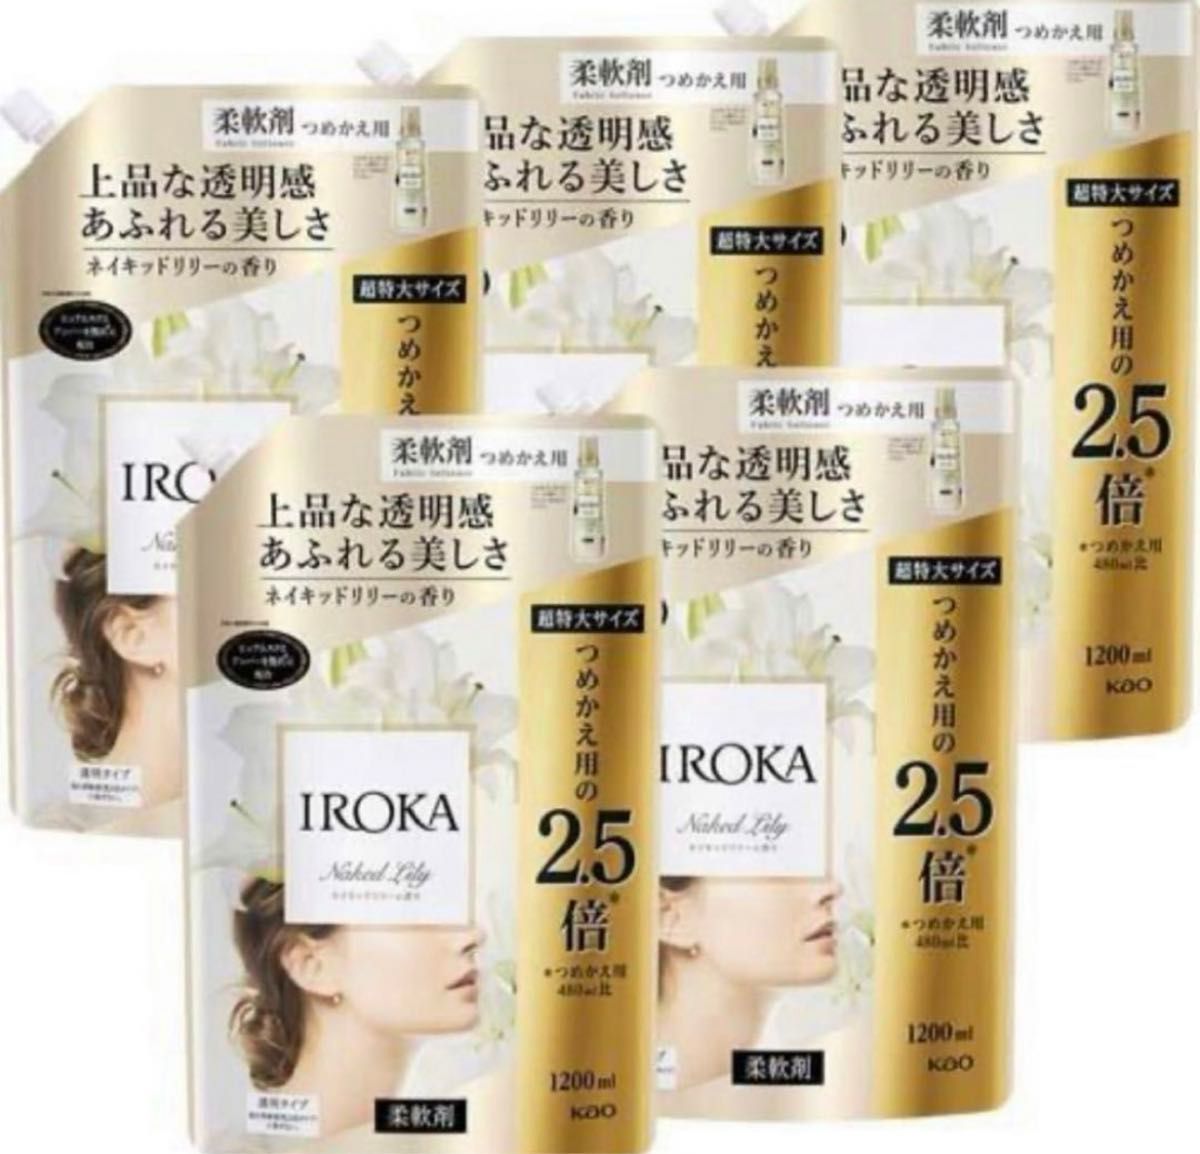 【大容量】IROKA 柔軟剤 香水のように上質で透明感あふれる香り ネイキッドリリーの香り 1200ml 大容量 2.5倍 5袋